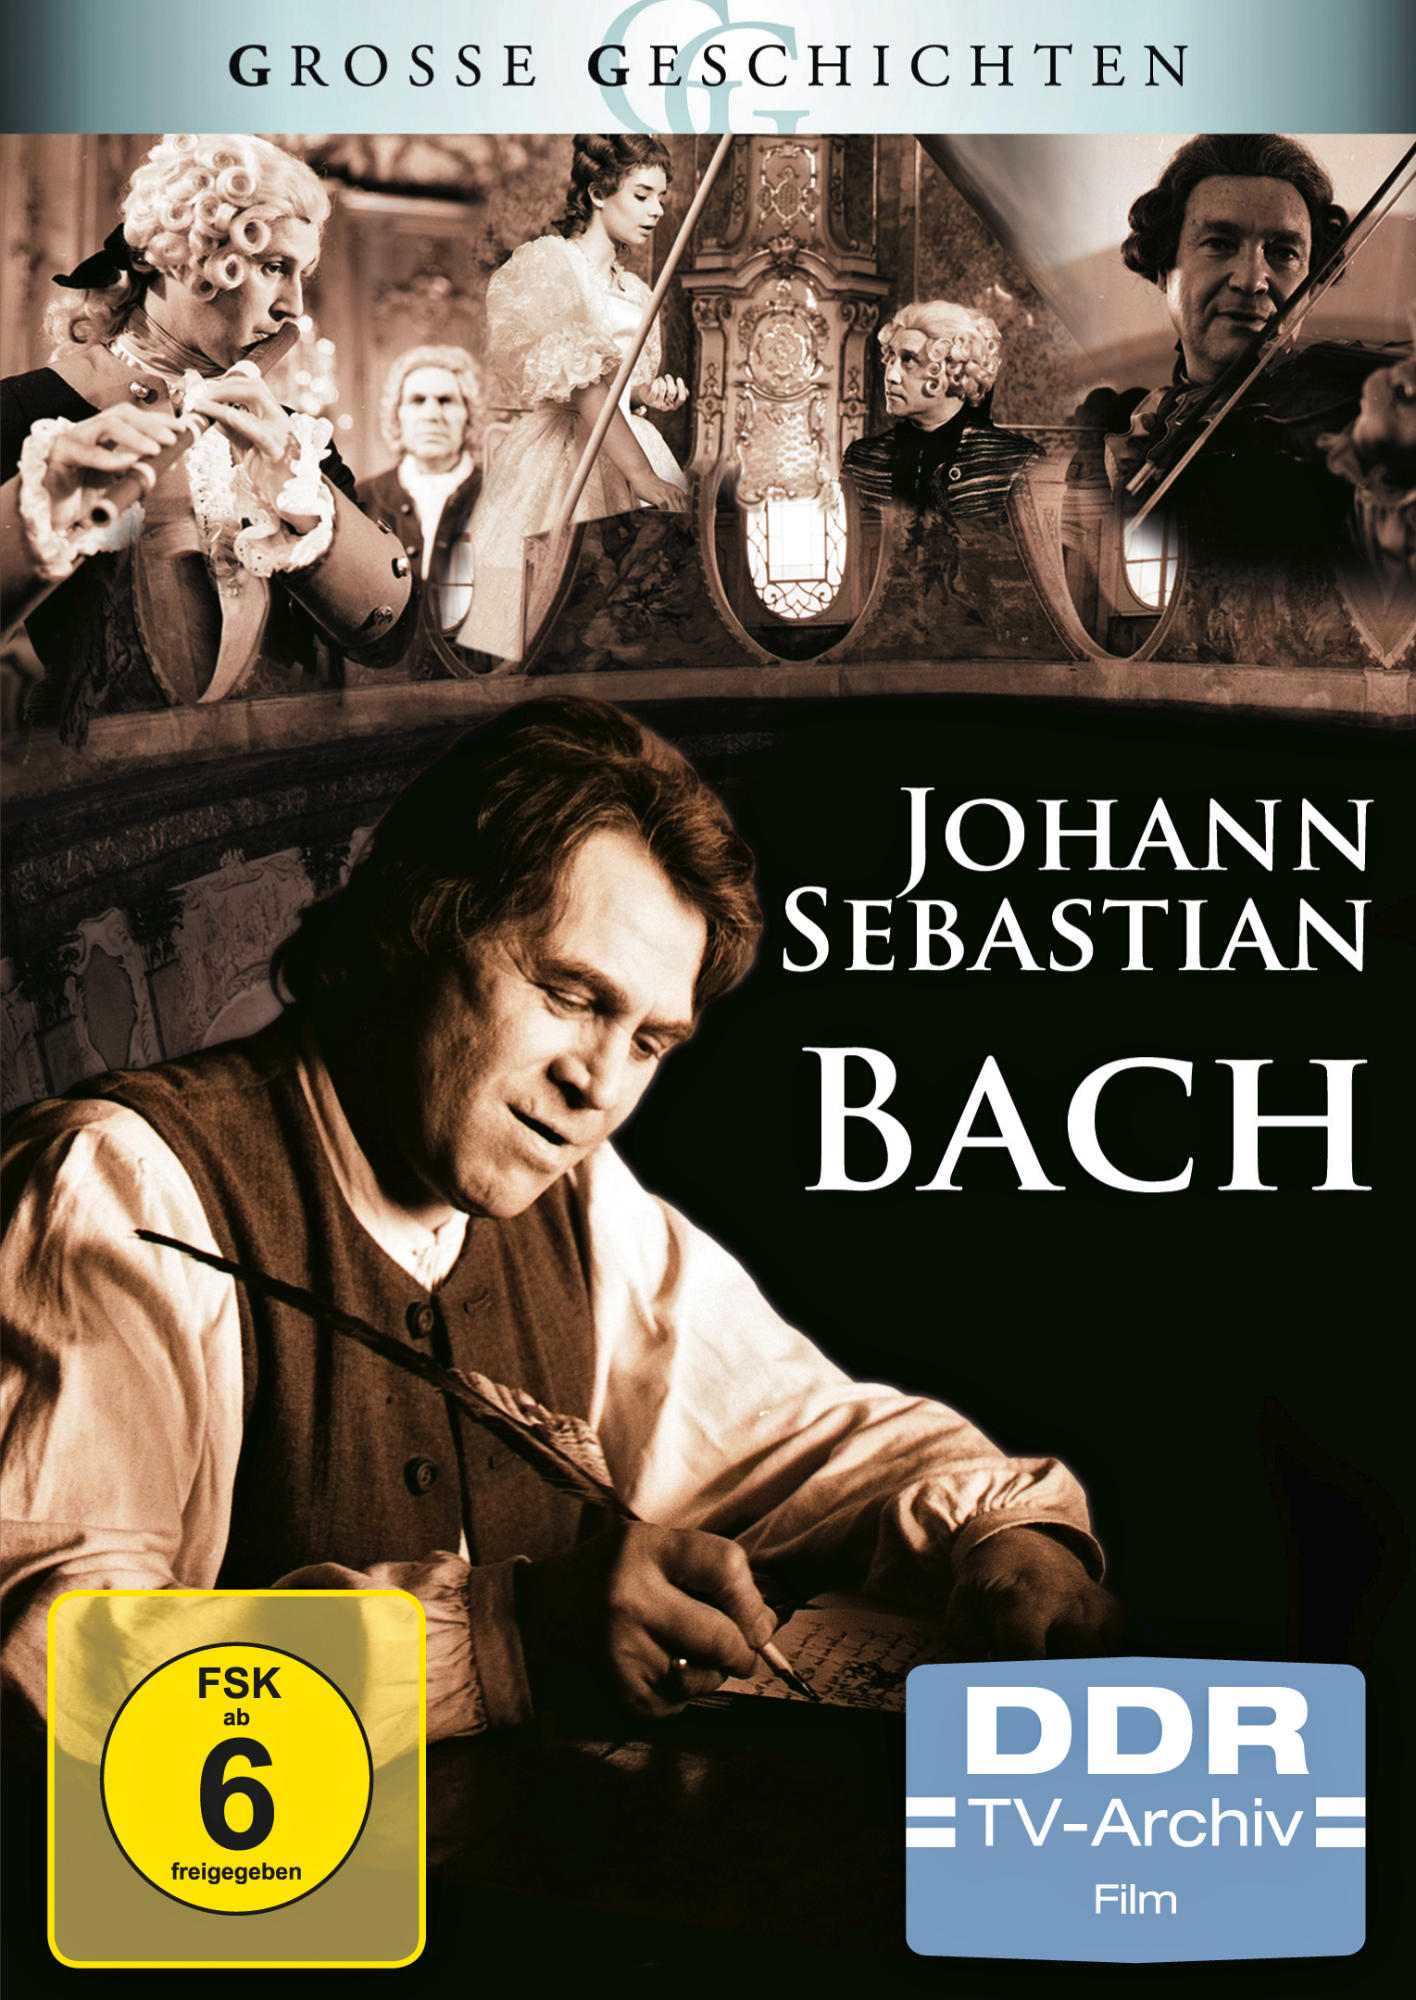 JOHANN SEBASTIAN BACH GESCHICHTEN) (GROSSE DVD